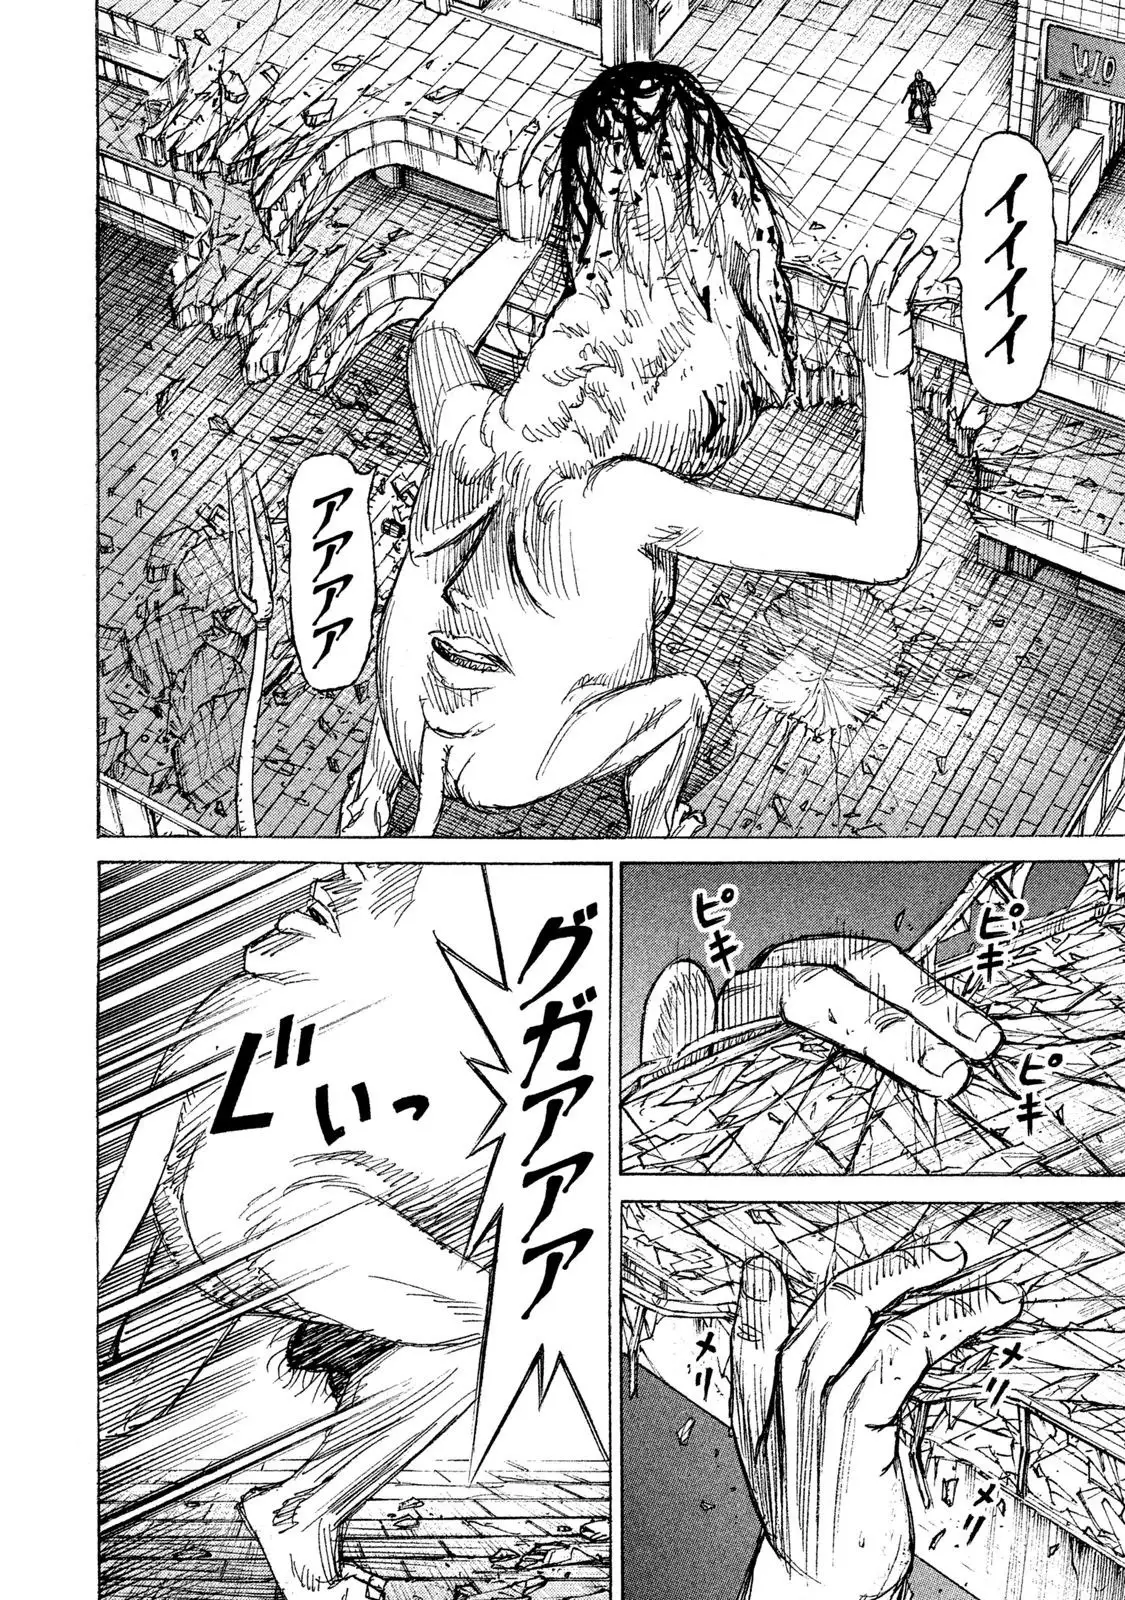 Higanjima - 48 Days Later - 13 page 3-7e13edfd